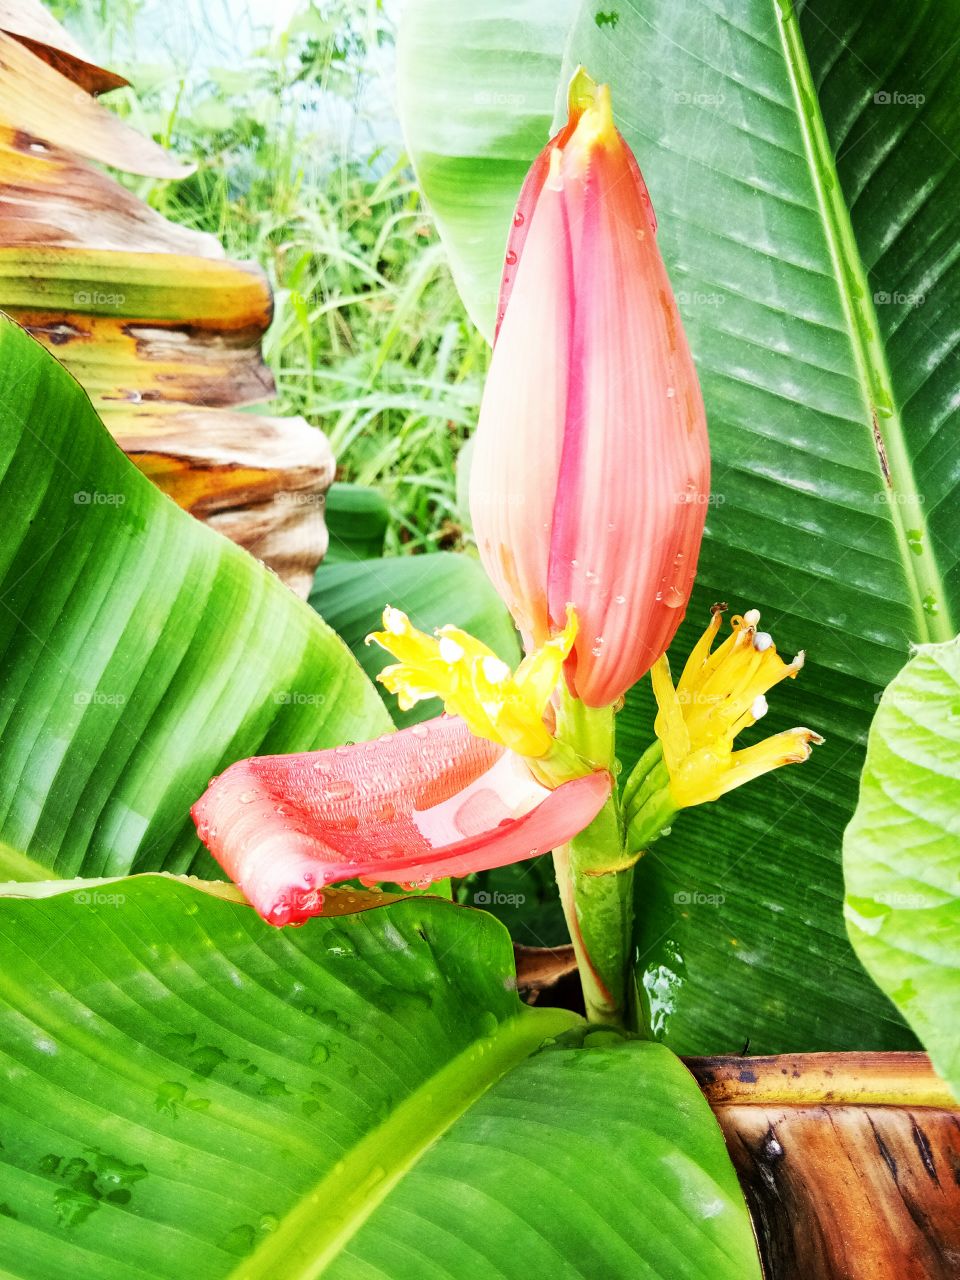 forest banana flower
leaf